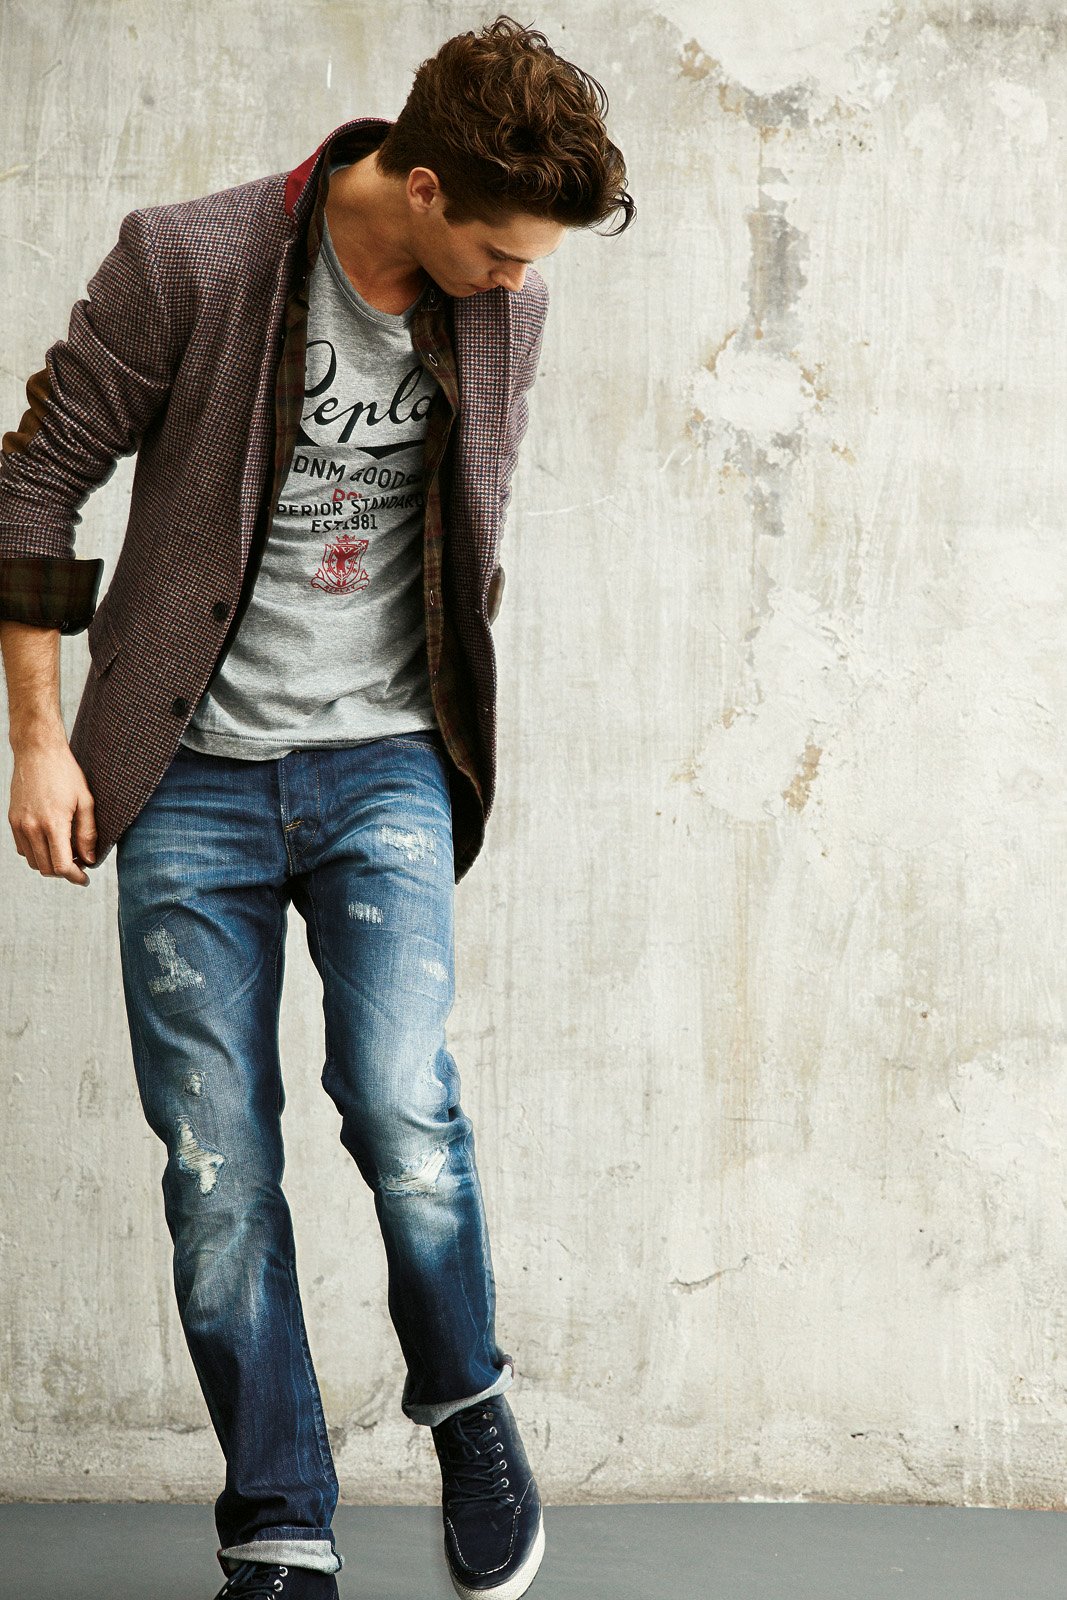 He is wearing jeans. Джинсы с пиджаком мужские. Мужчина в джинсах. Красивые парни в джинсах. Пиджак с джинсами мужские стиль.